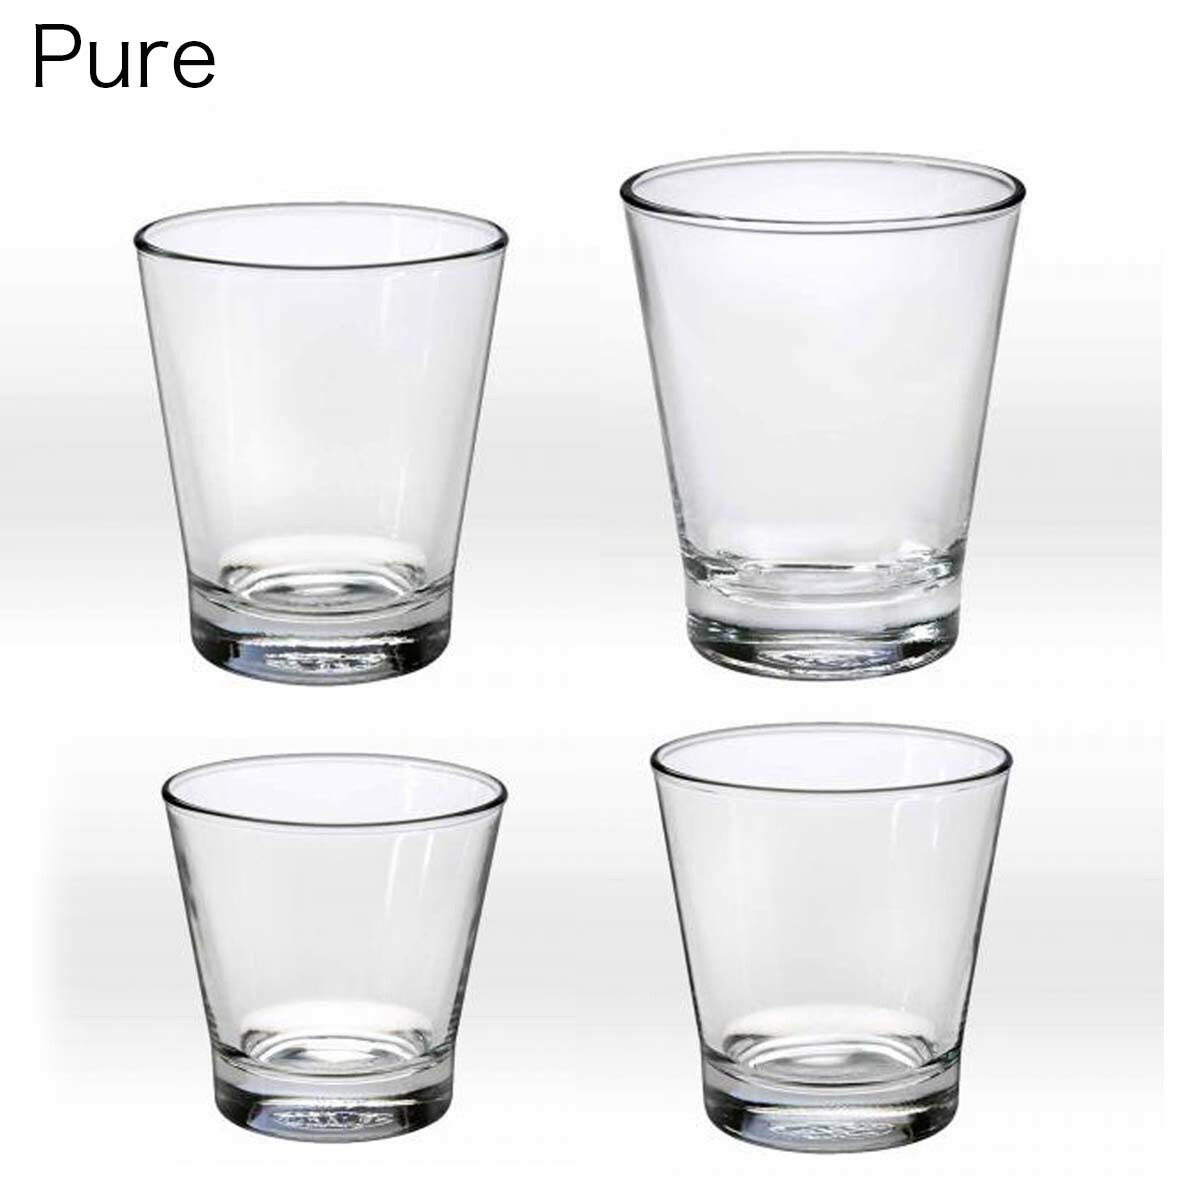 【楽天市場】DURALEX デュラレックス Pure ピュア 350ml 4個セット フランス製: グラスとガラスの器 ミモザ